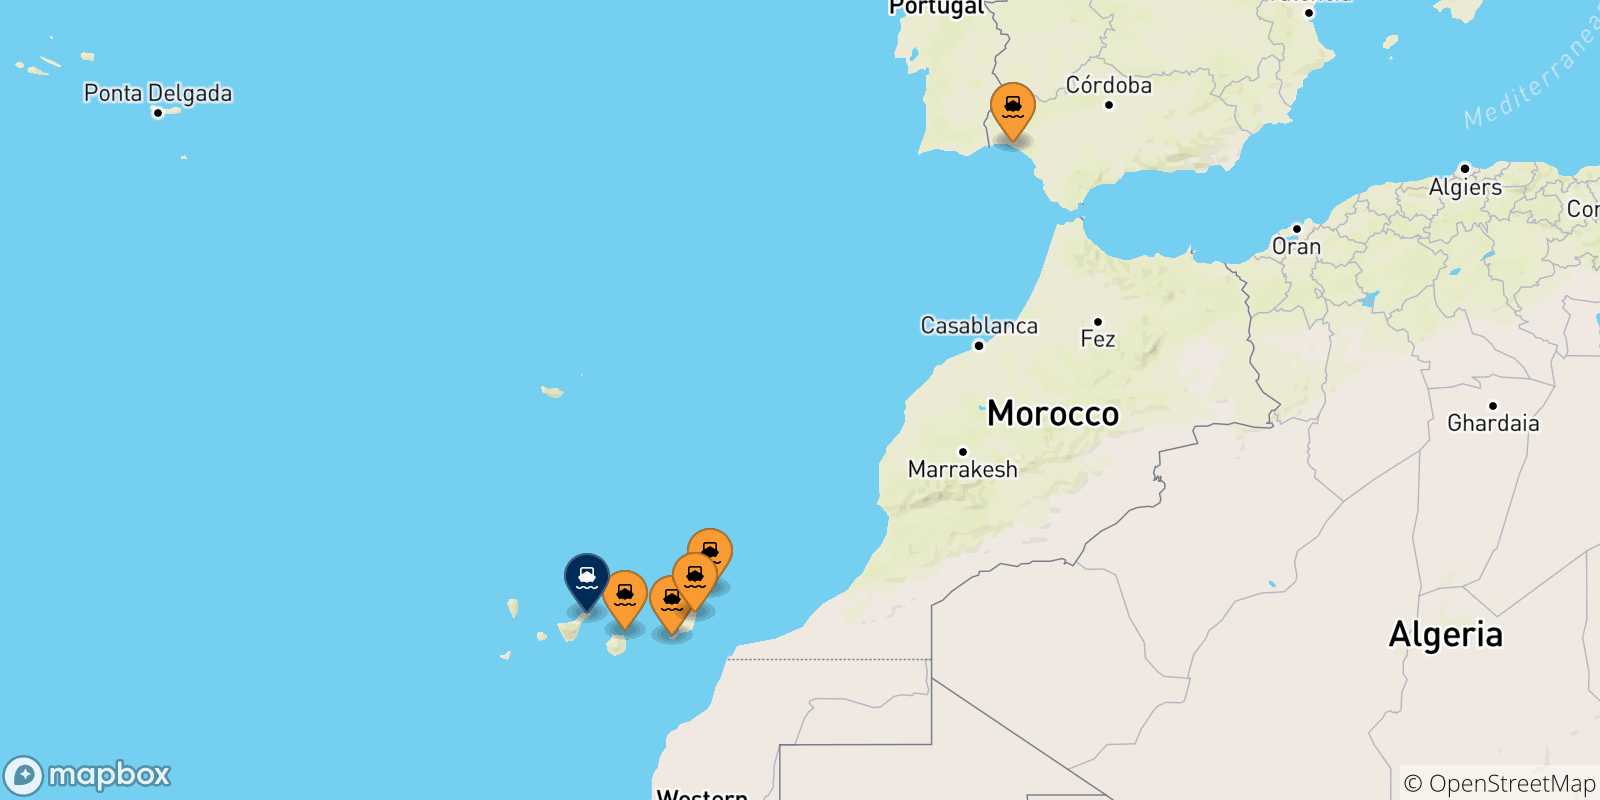 Mappa delle possibili rotte tra la Spagna e Santa Cruz De Tenerife